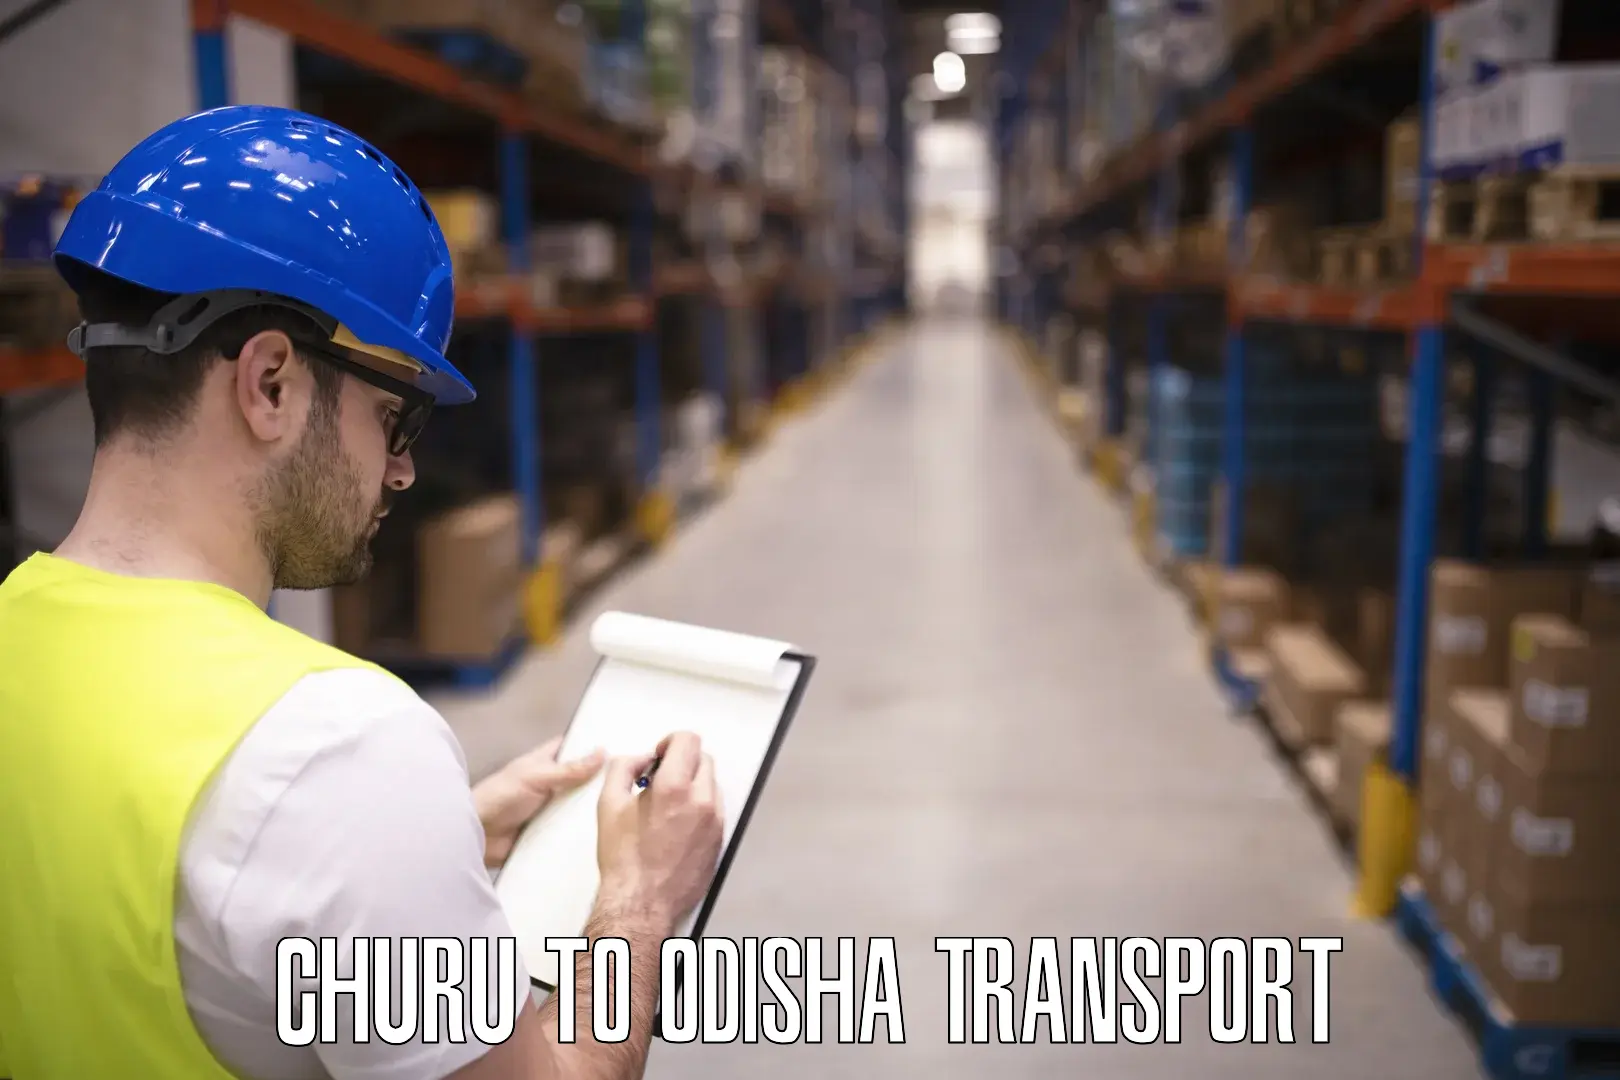 Nearest transport service Churu to Odisha